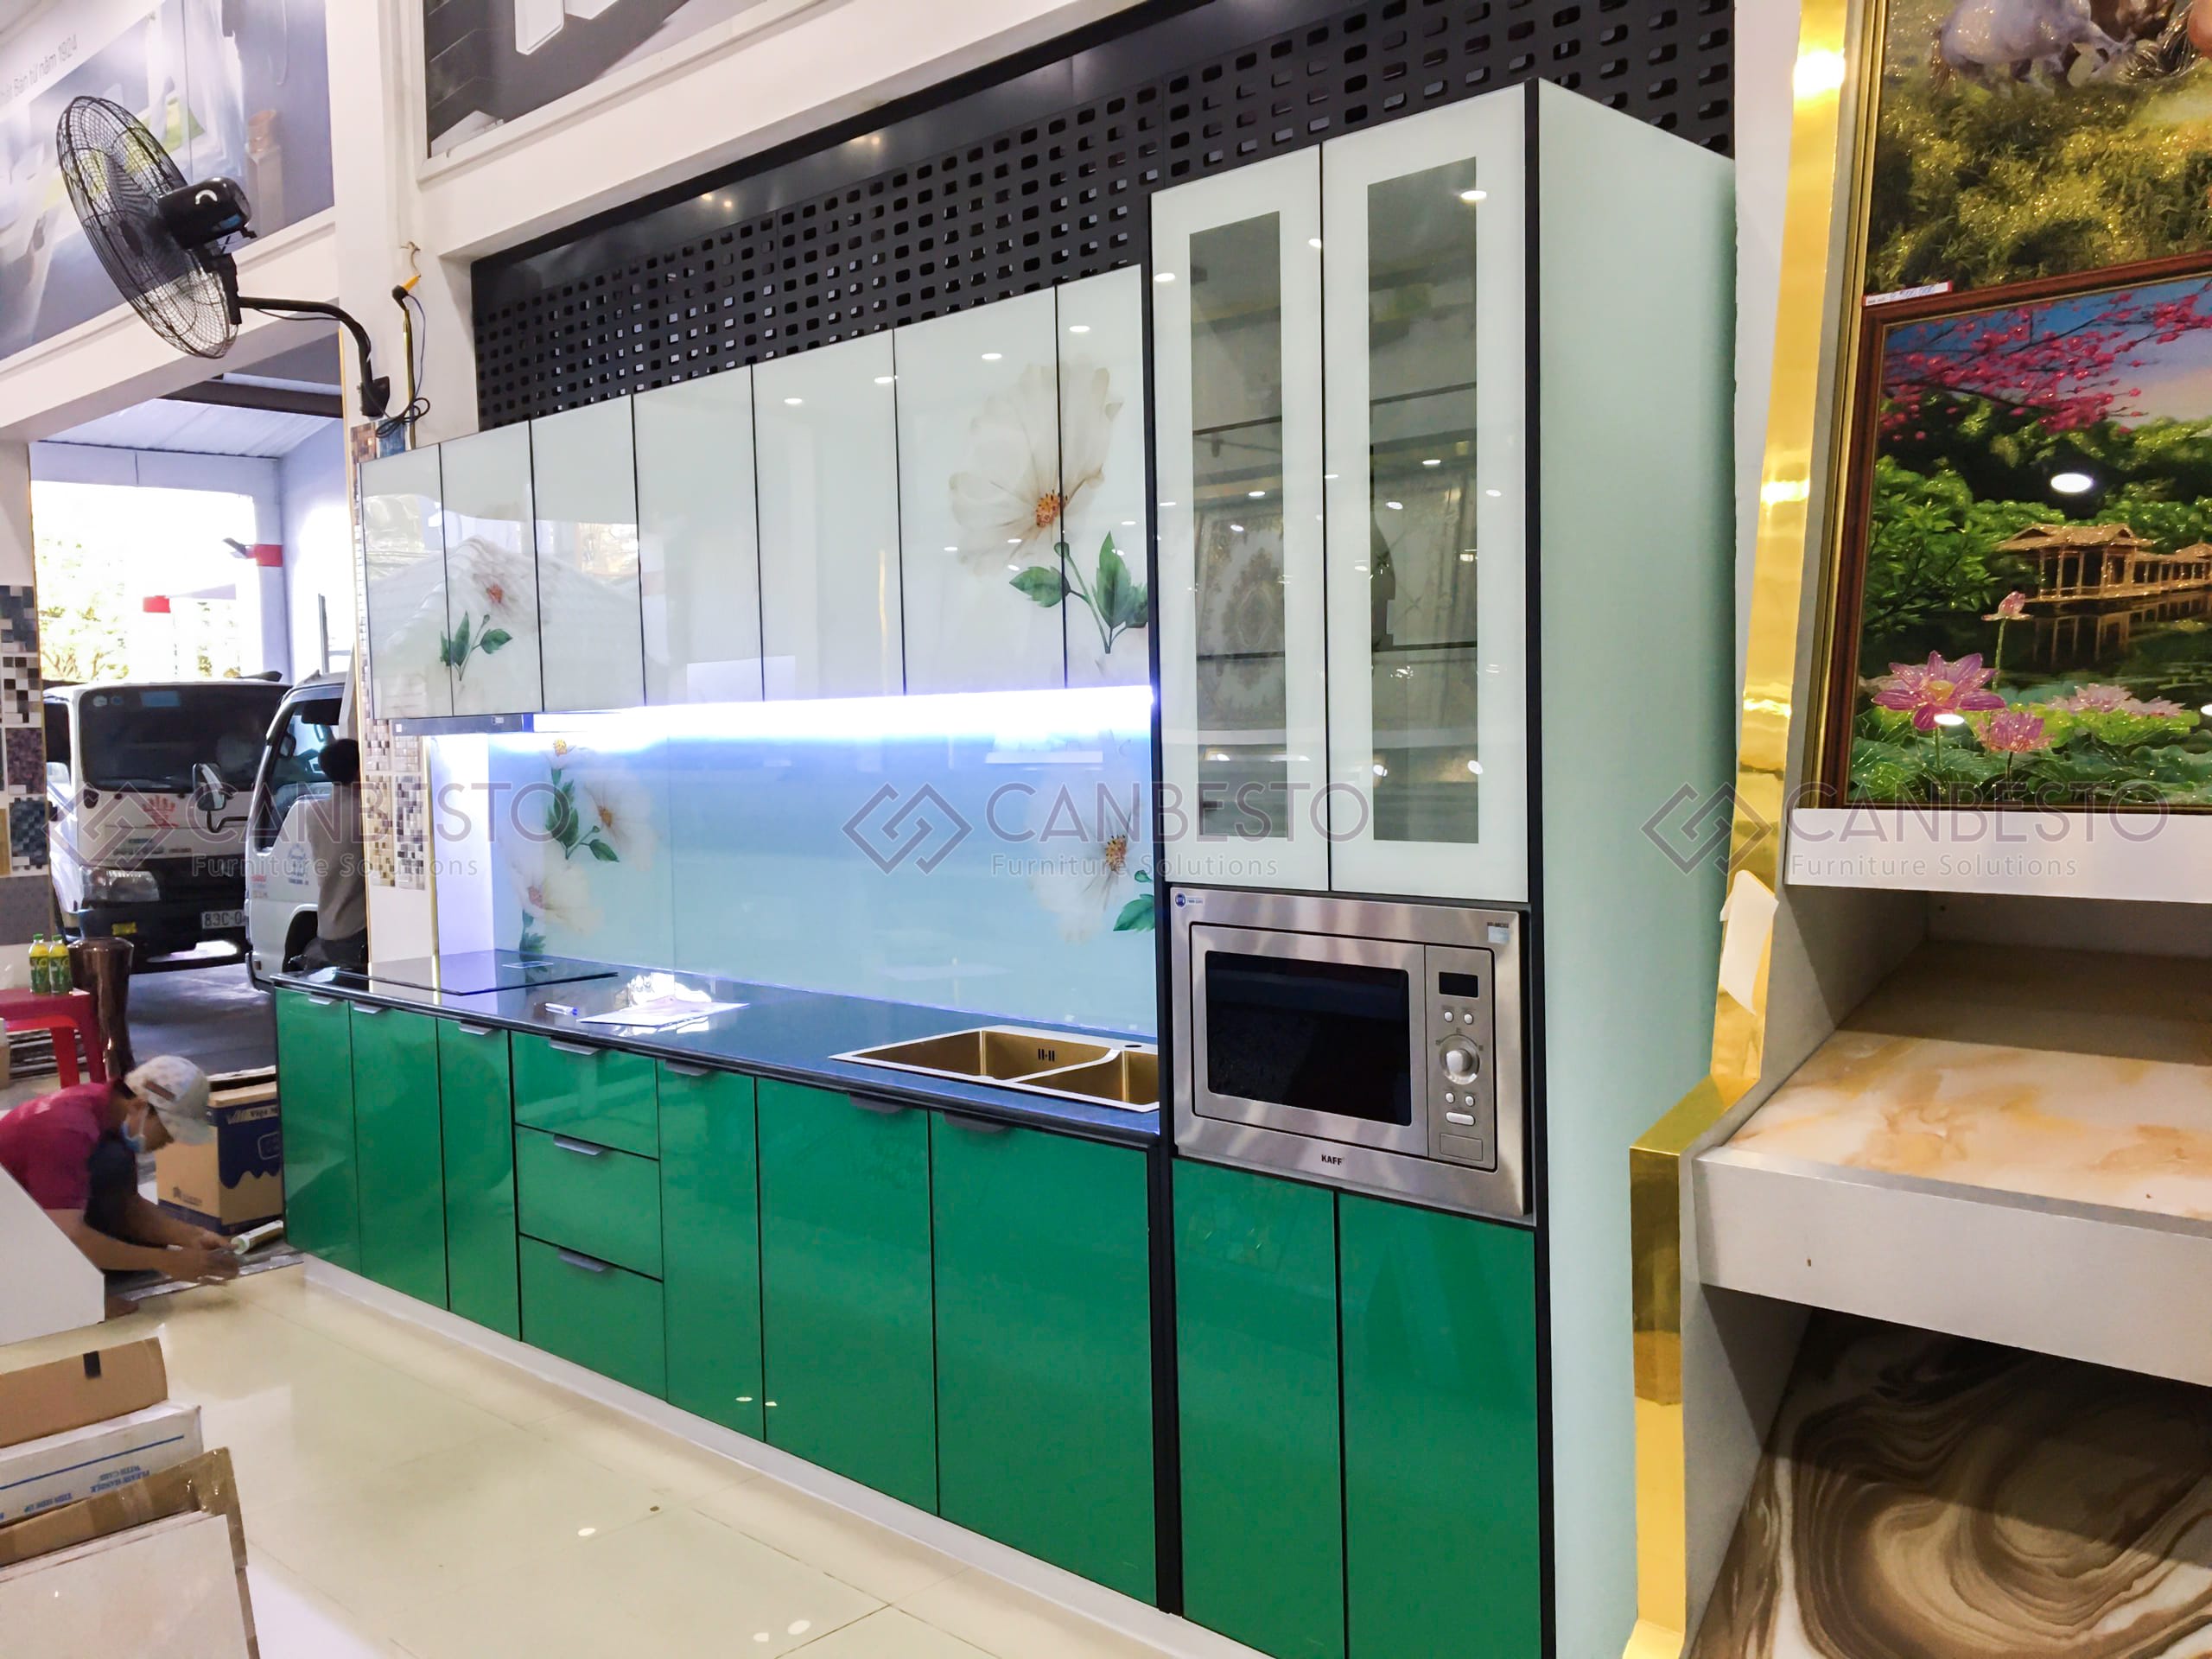 Canbesto: Tủ bếp nhôm kính, thiết kế nội thất tại Biên Hòa - Đồng Nai.